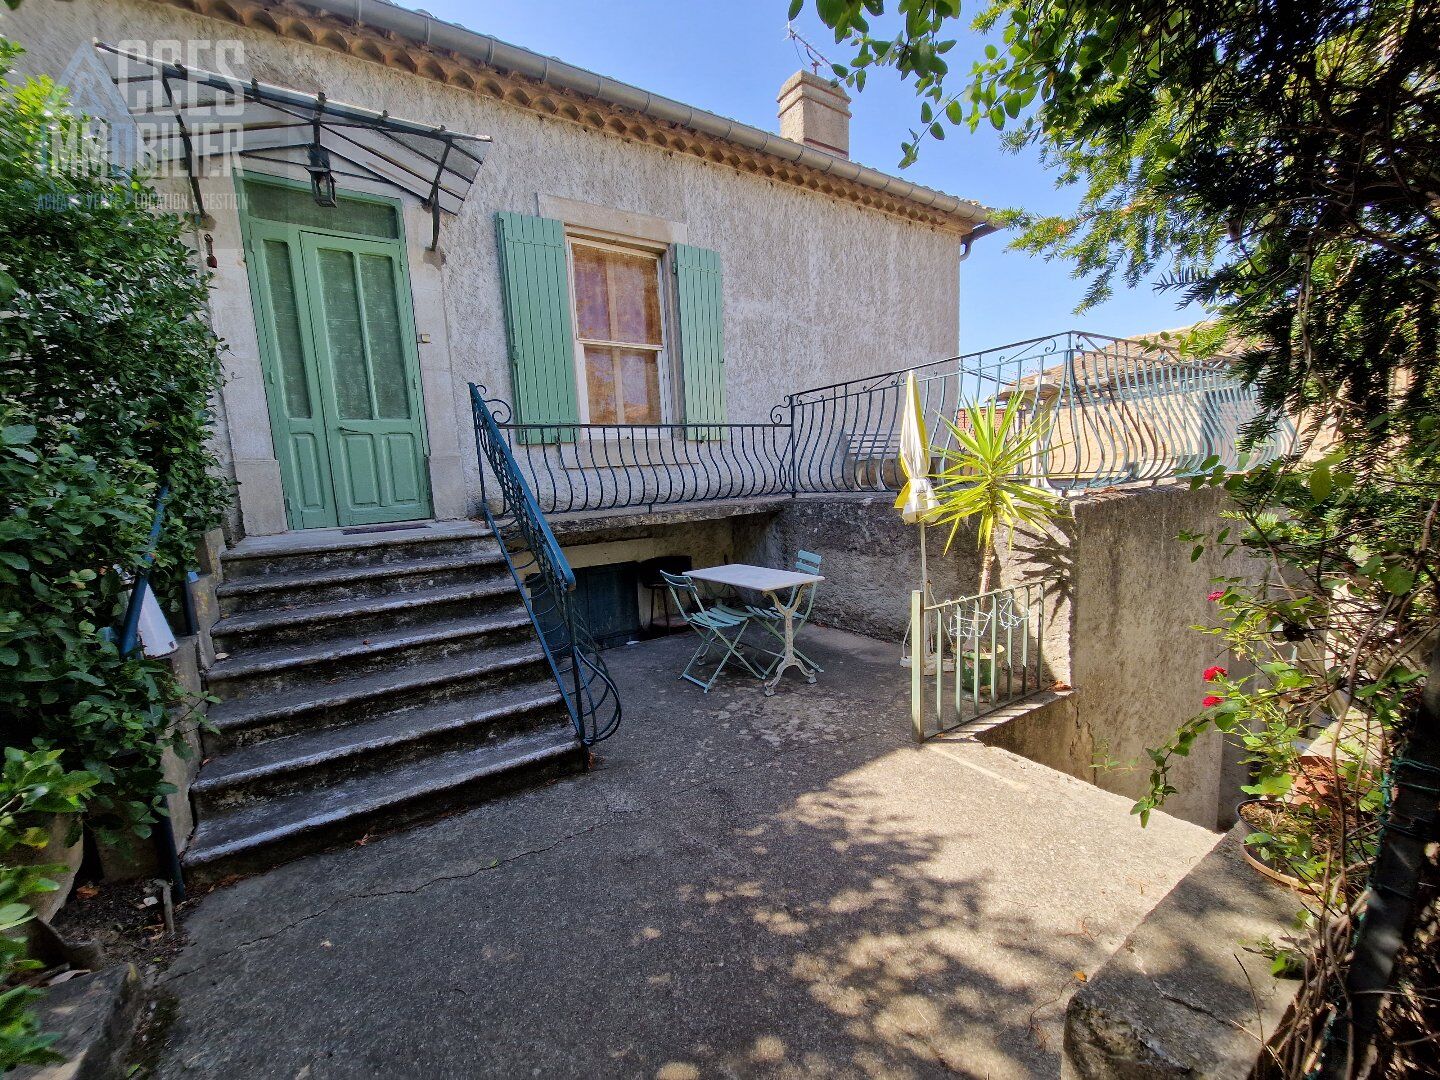 Vente Maison de village 98 m² à Fonties d'Aude 115 000 €